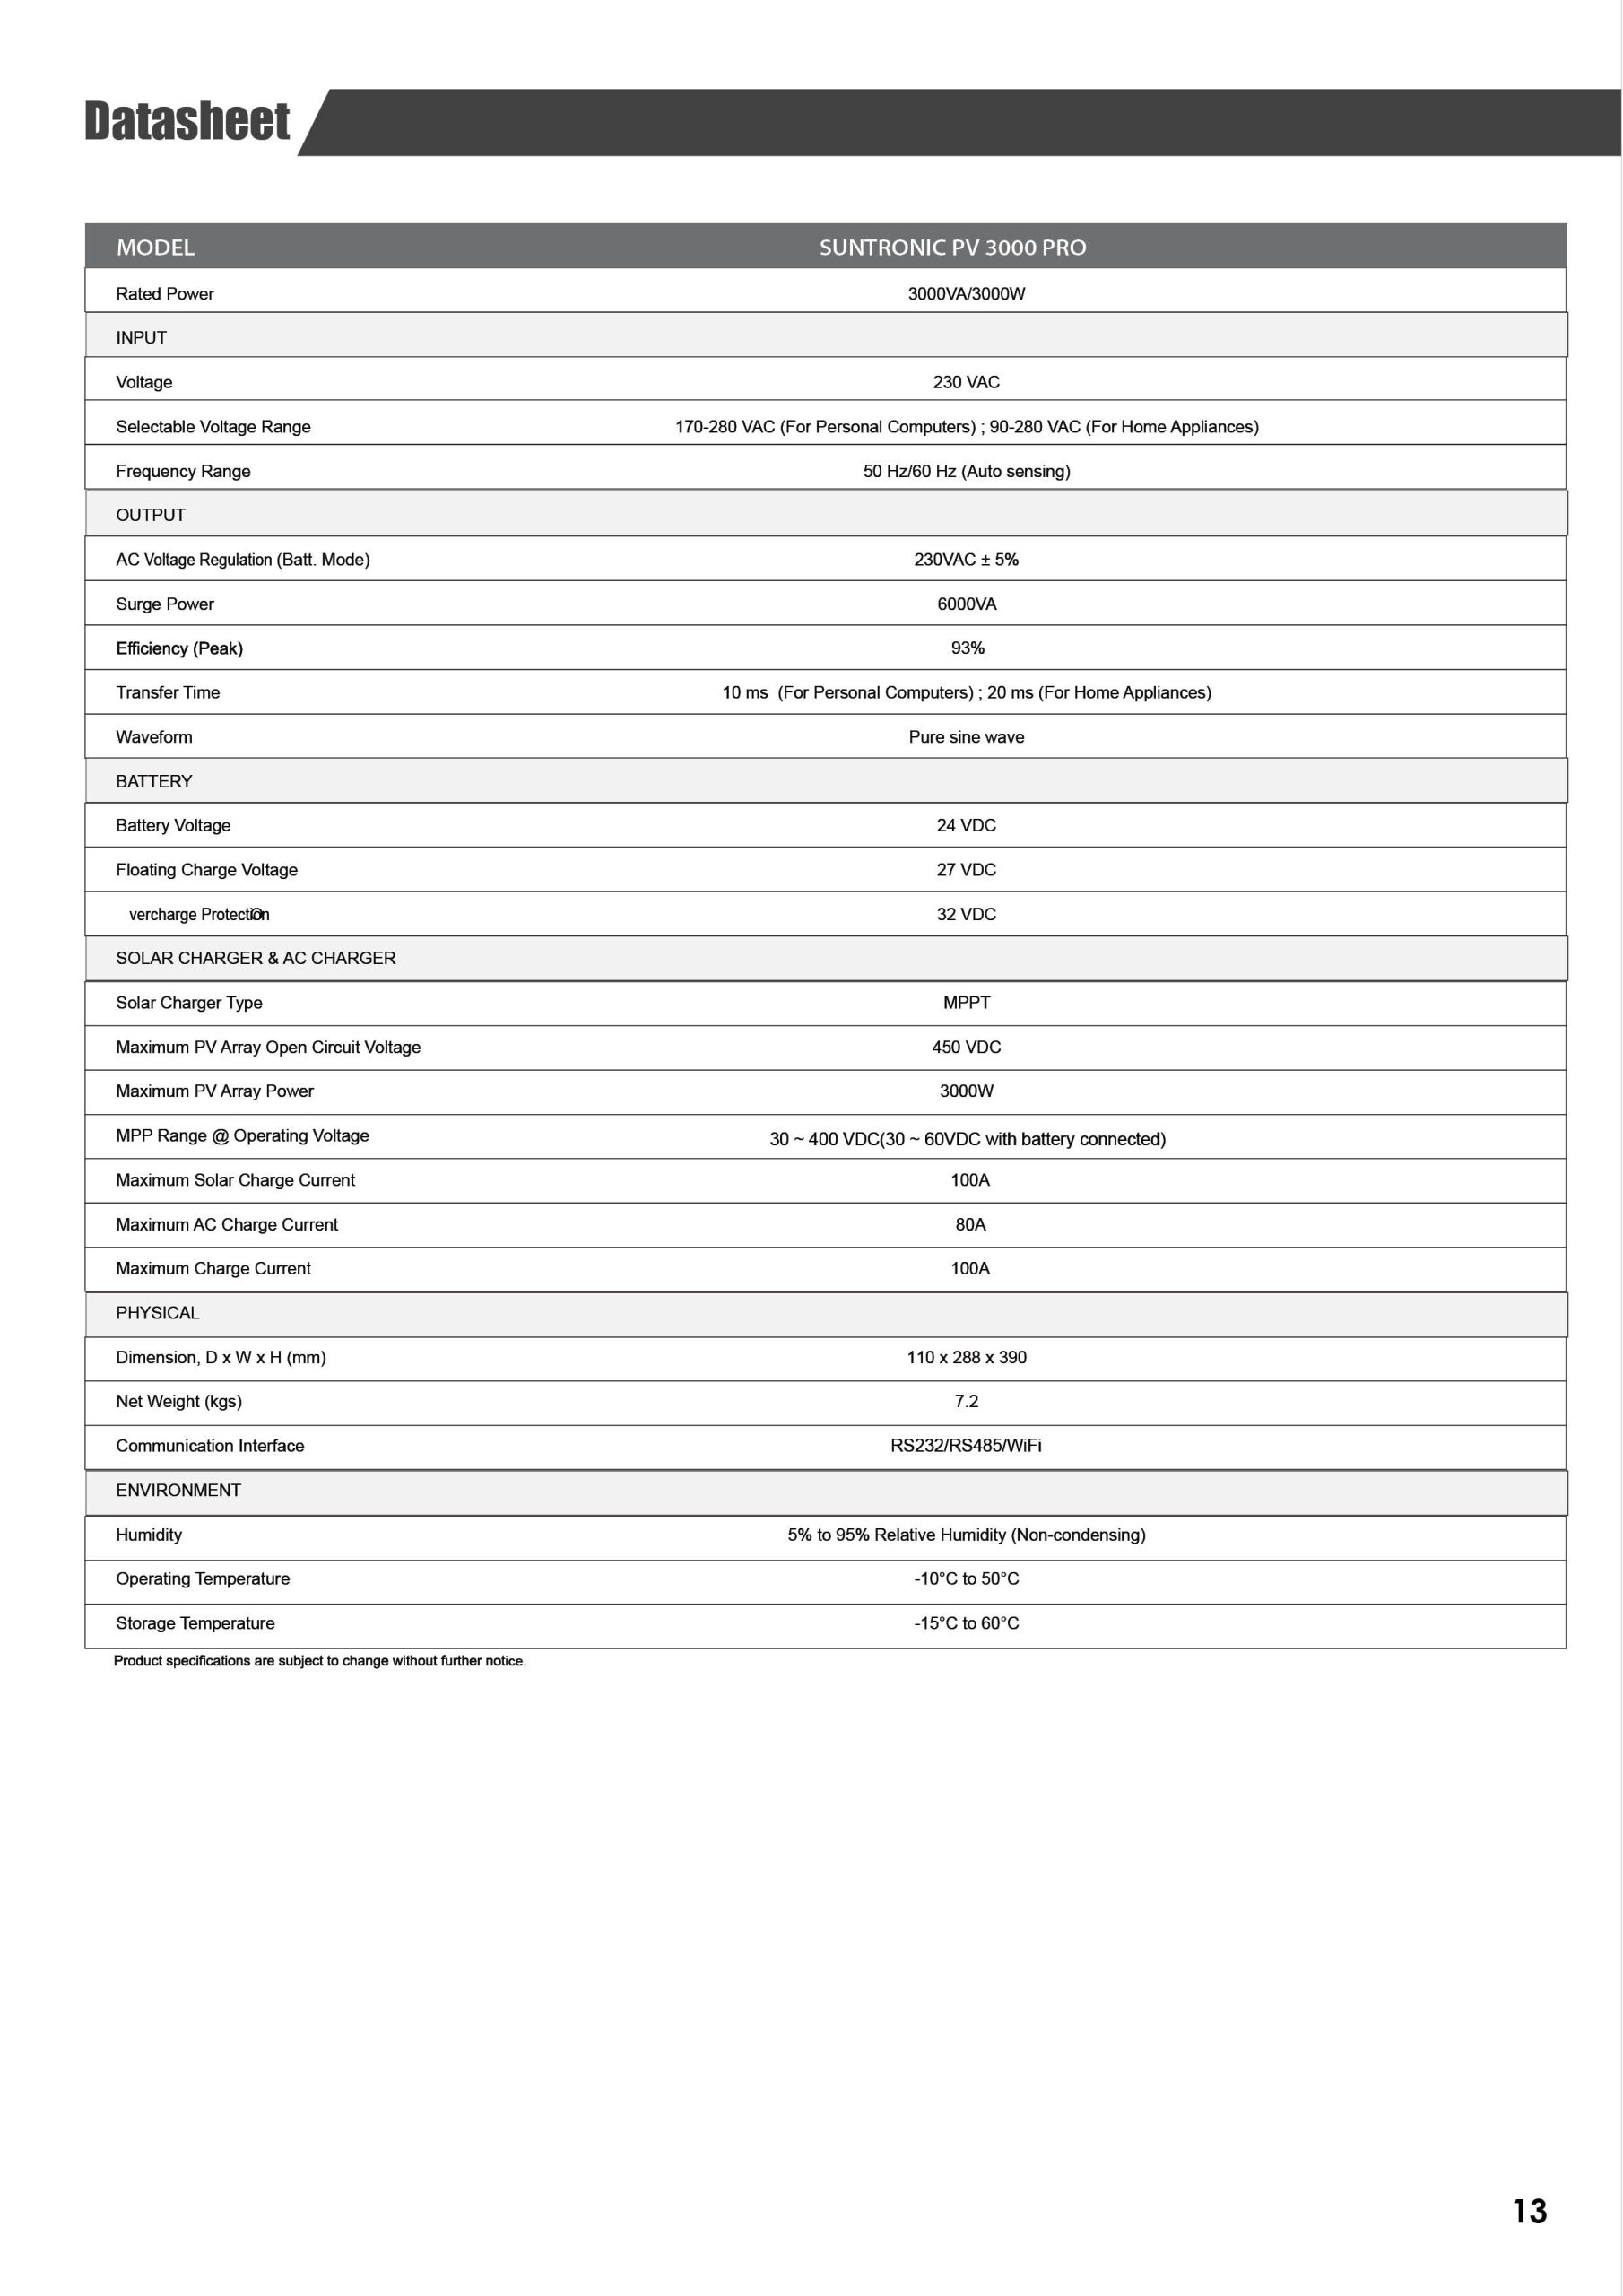 Suntronic PV3000 Pro Datasheet